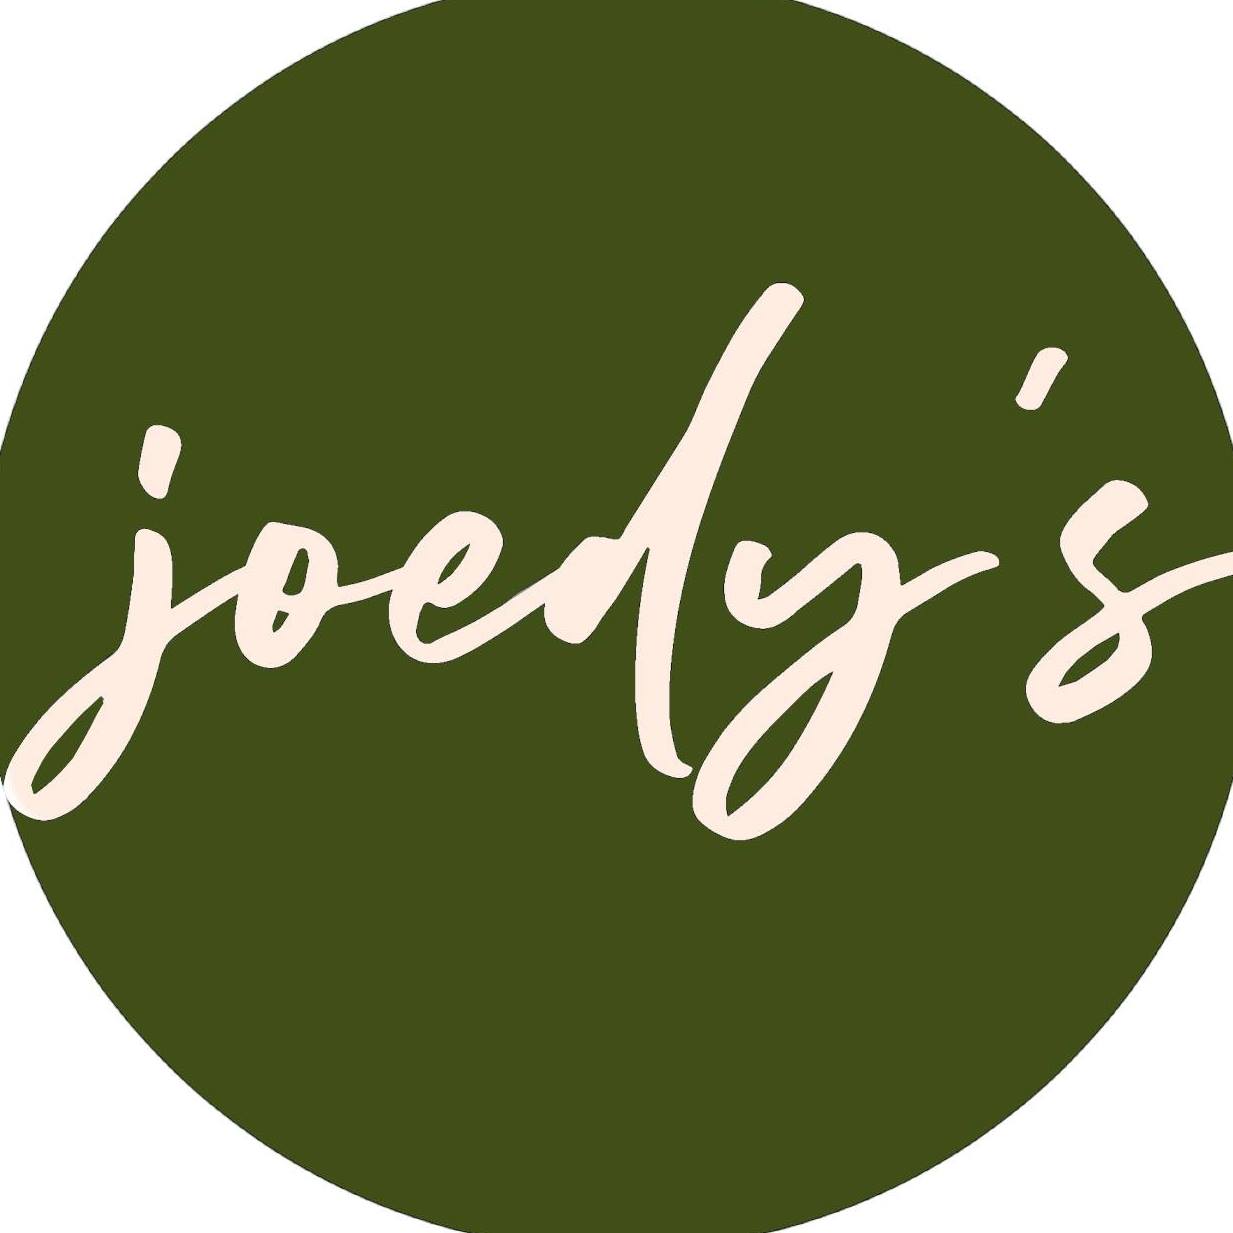 Joedys Cafe